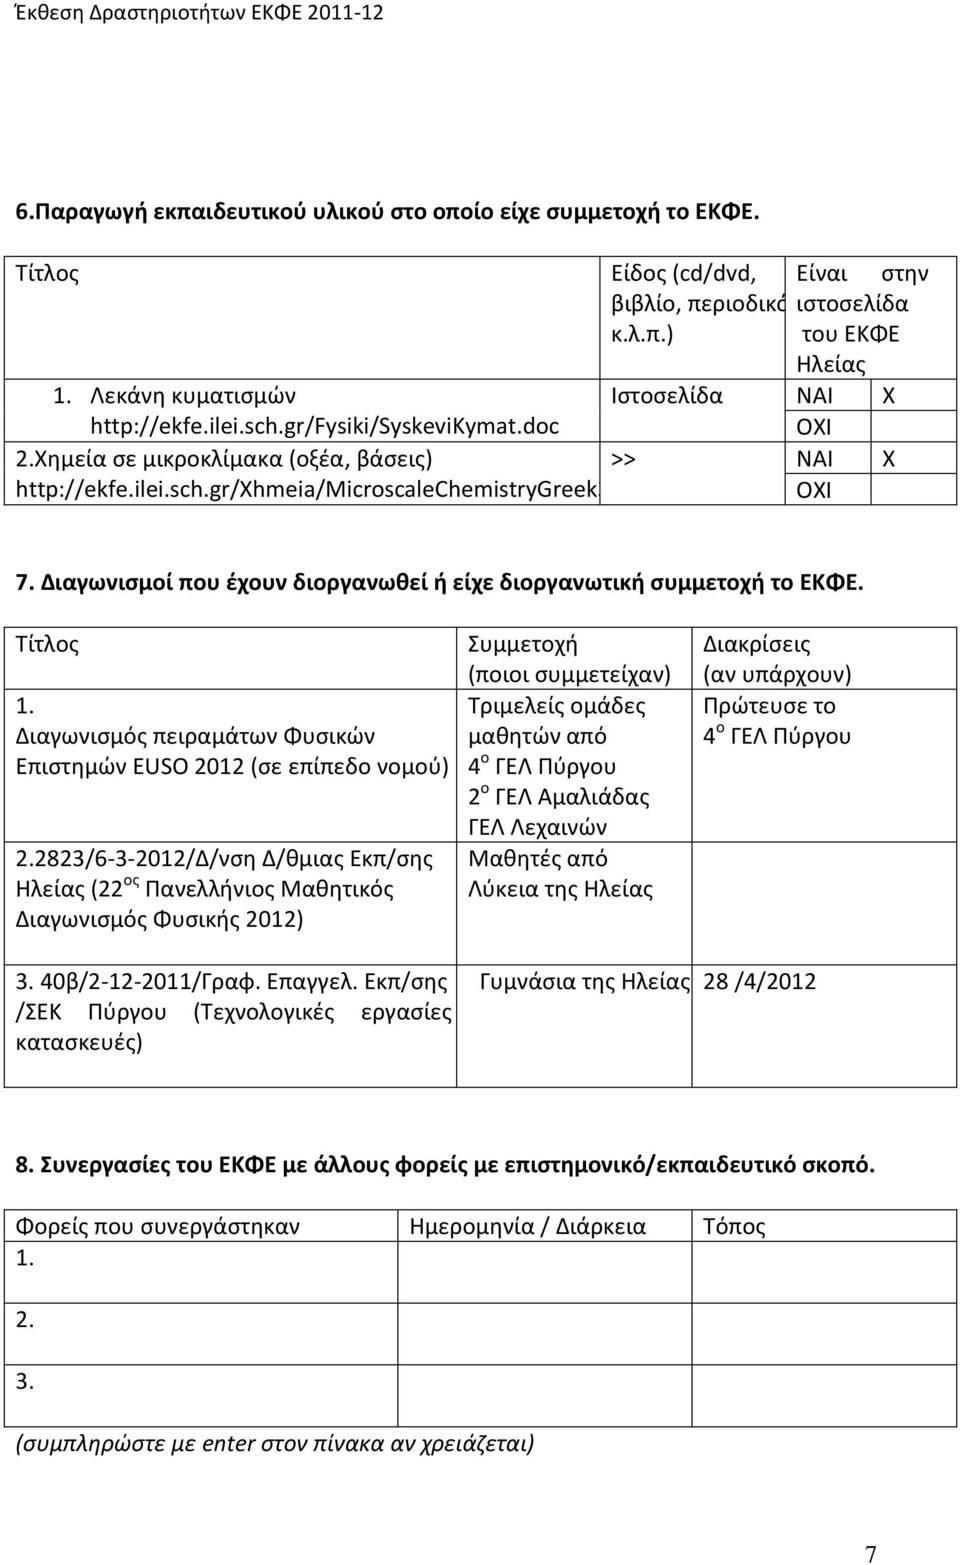 Τίτλος 1. Διαγωνισμός πειραμάτων Φυσικών Επιστημών EUSO 2012 (σε επίπεδο νομού) 2.